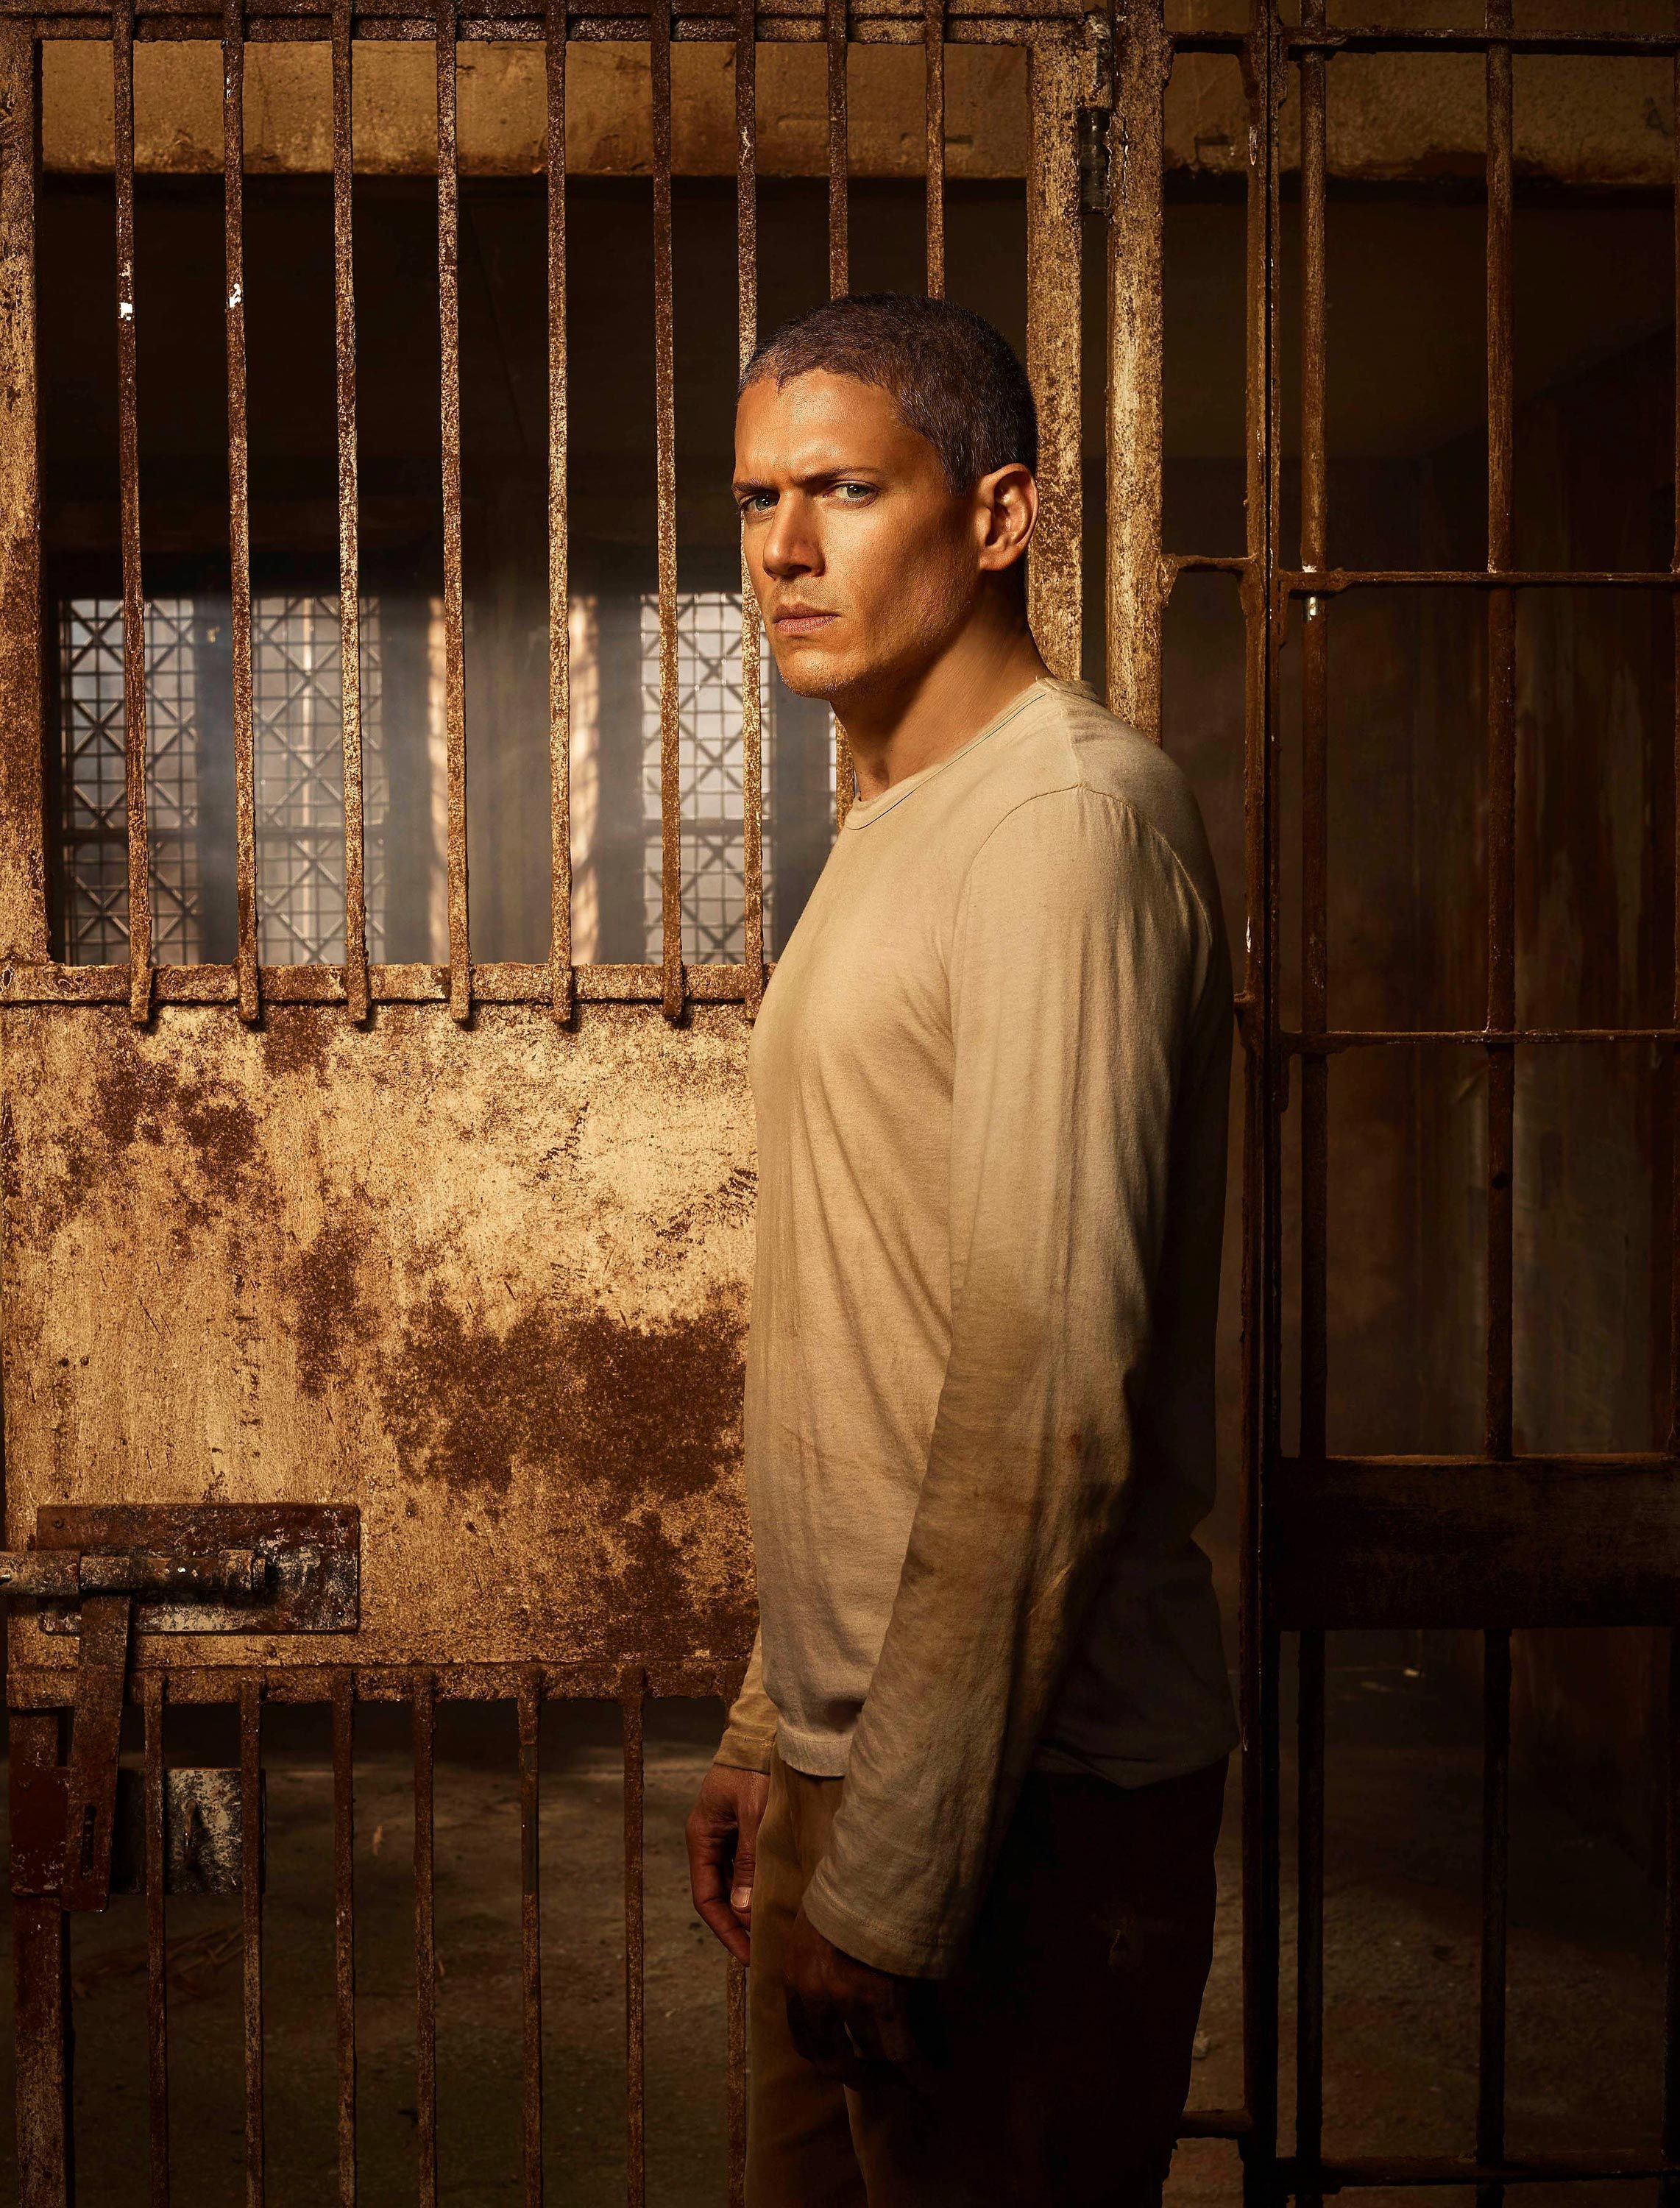 watch prison break season 5 episode 1 free online